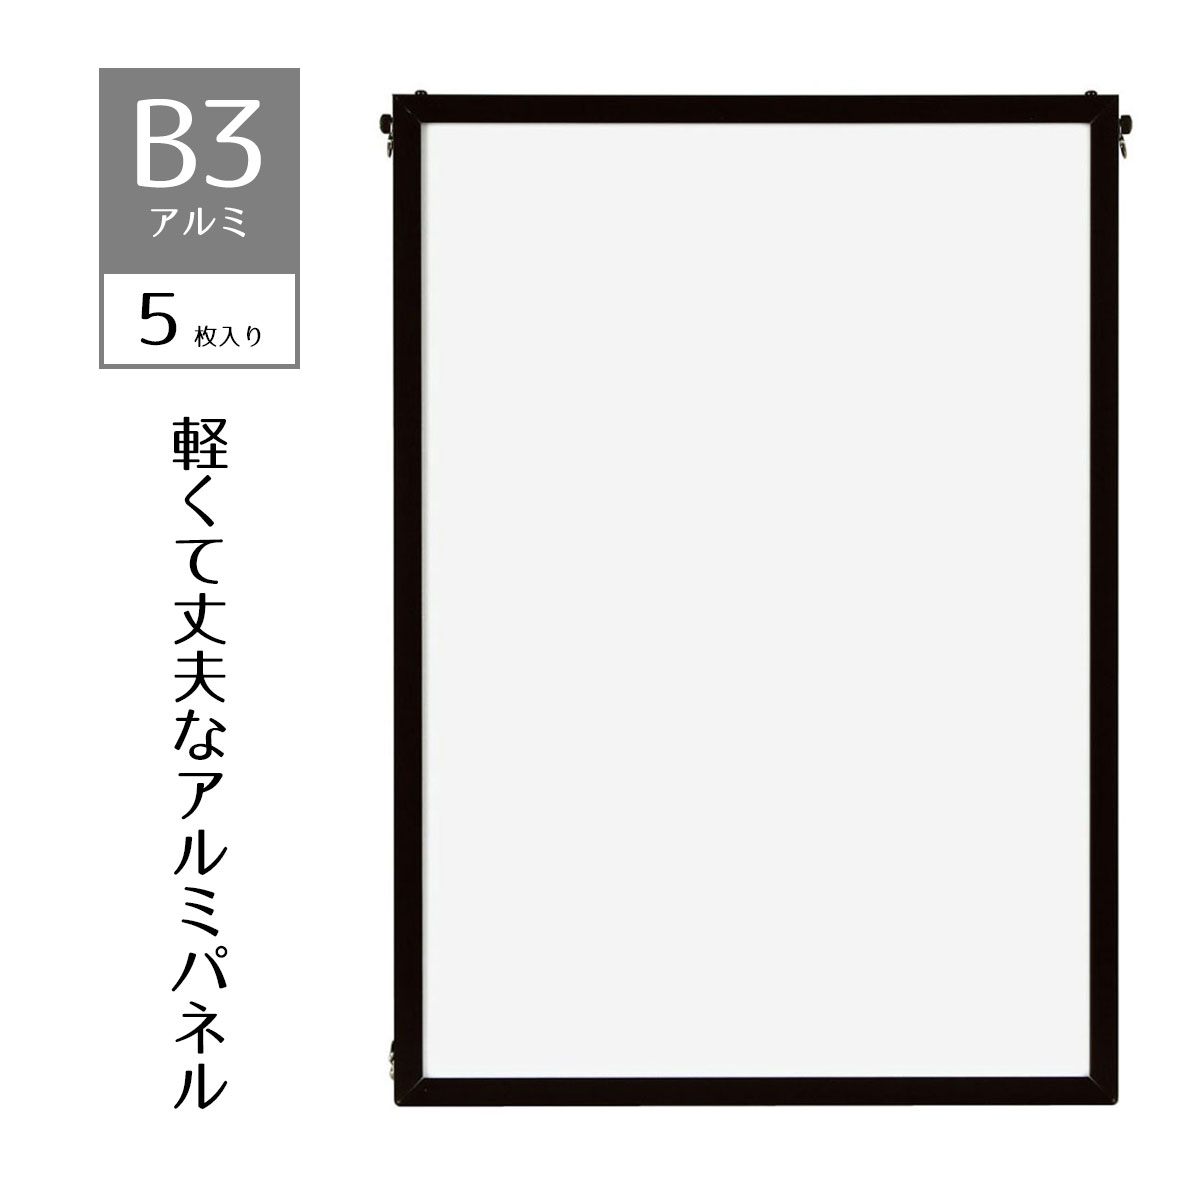 【5枚入り】ベストアルミパネル 黒 B3ポスター・写真・ポップなど幅広く利用できる、軽くて丈夫なアル..